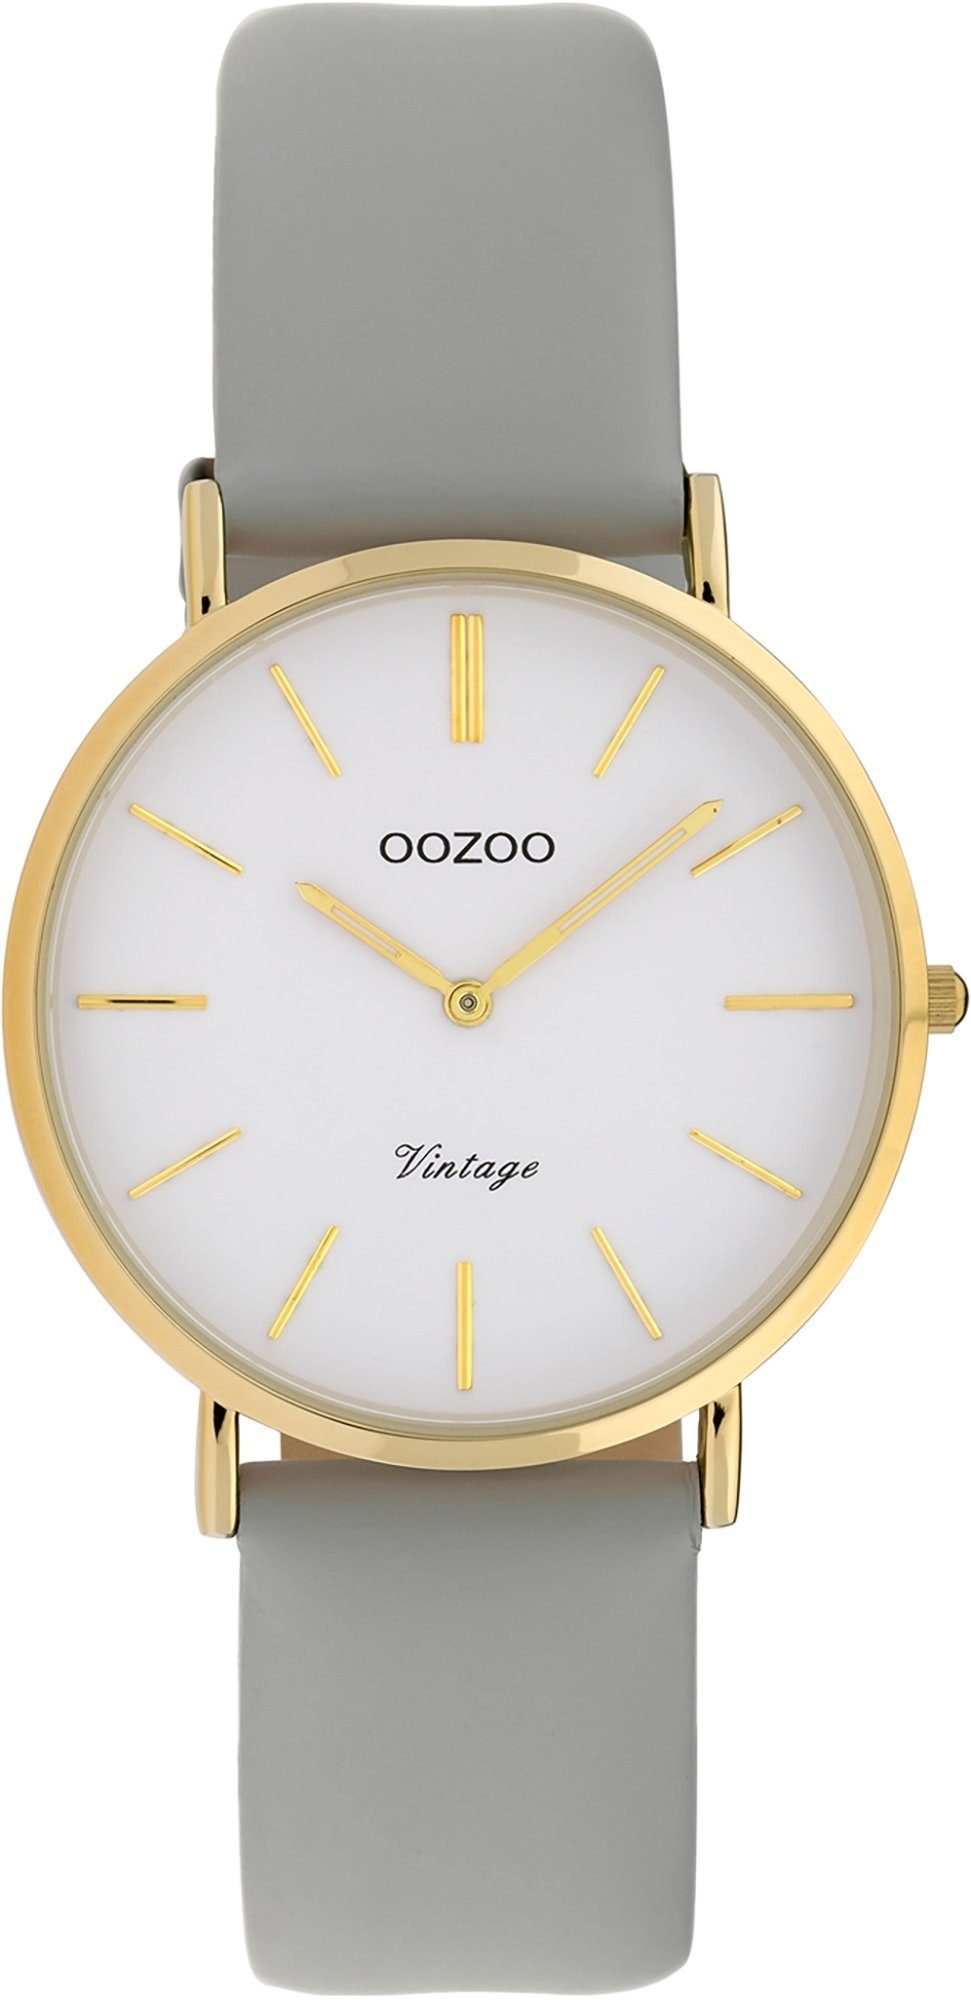 OOZOO Quarzuhr Oozoo Damen Armbanduhr grau Analog, Damenuhr rund, mittel (ca. 32mm) Lederarmband, Fashion-Style